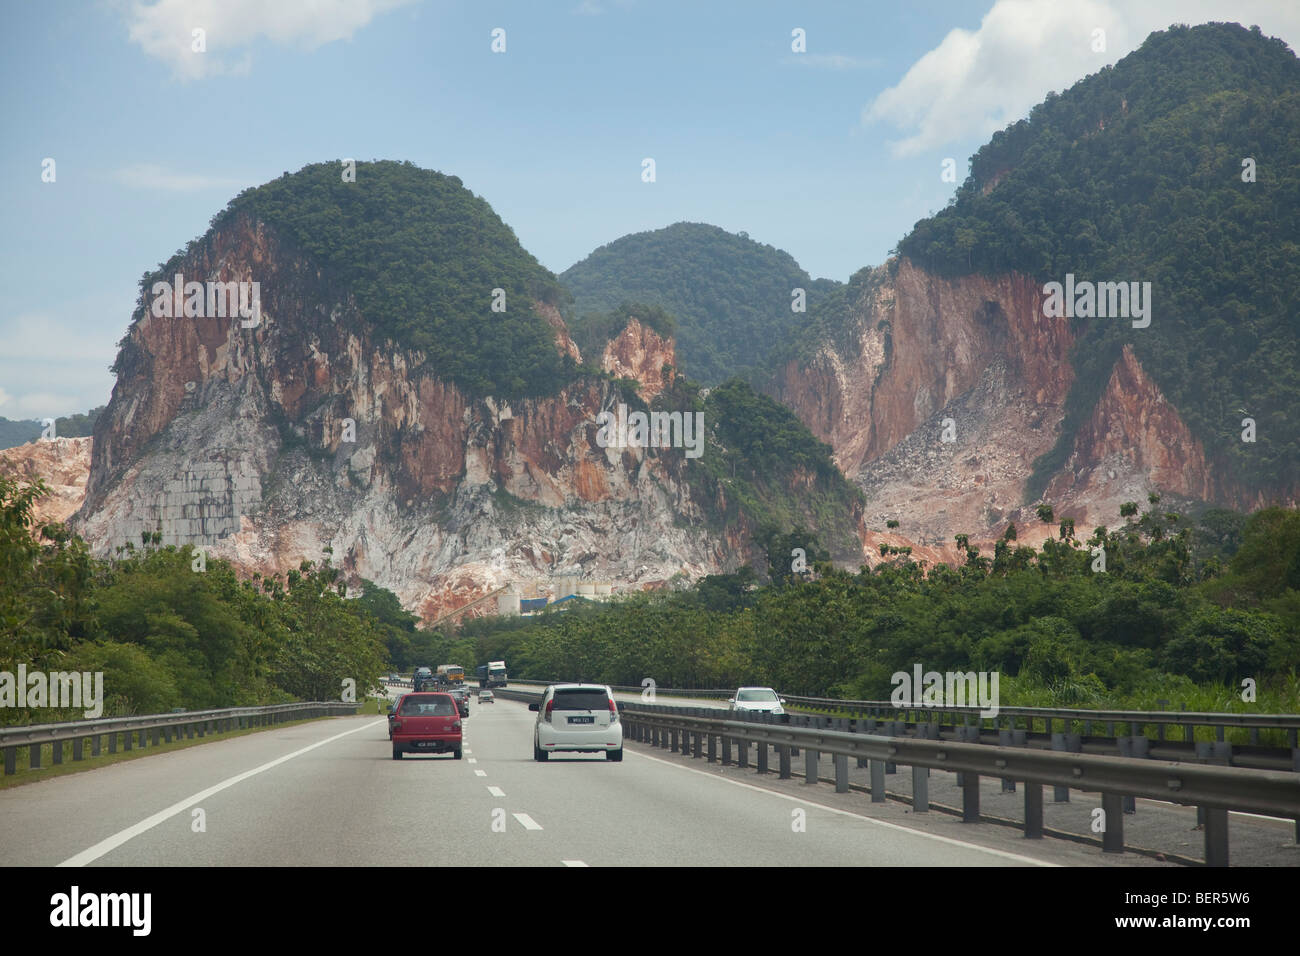 Marmor, Kalkstein Steinbruch in den Bergen von Perak, Malaysia, Ansicht von Norden / Süden Autobahn Stockfoto